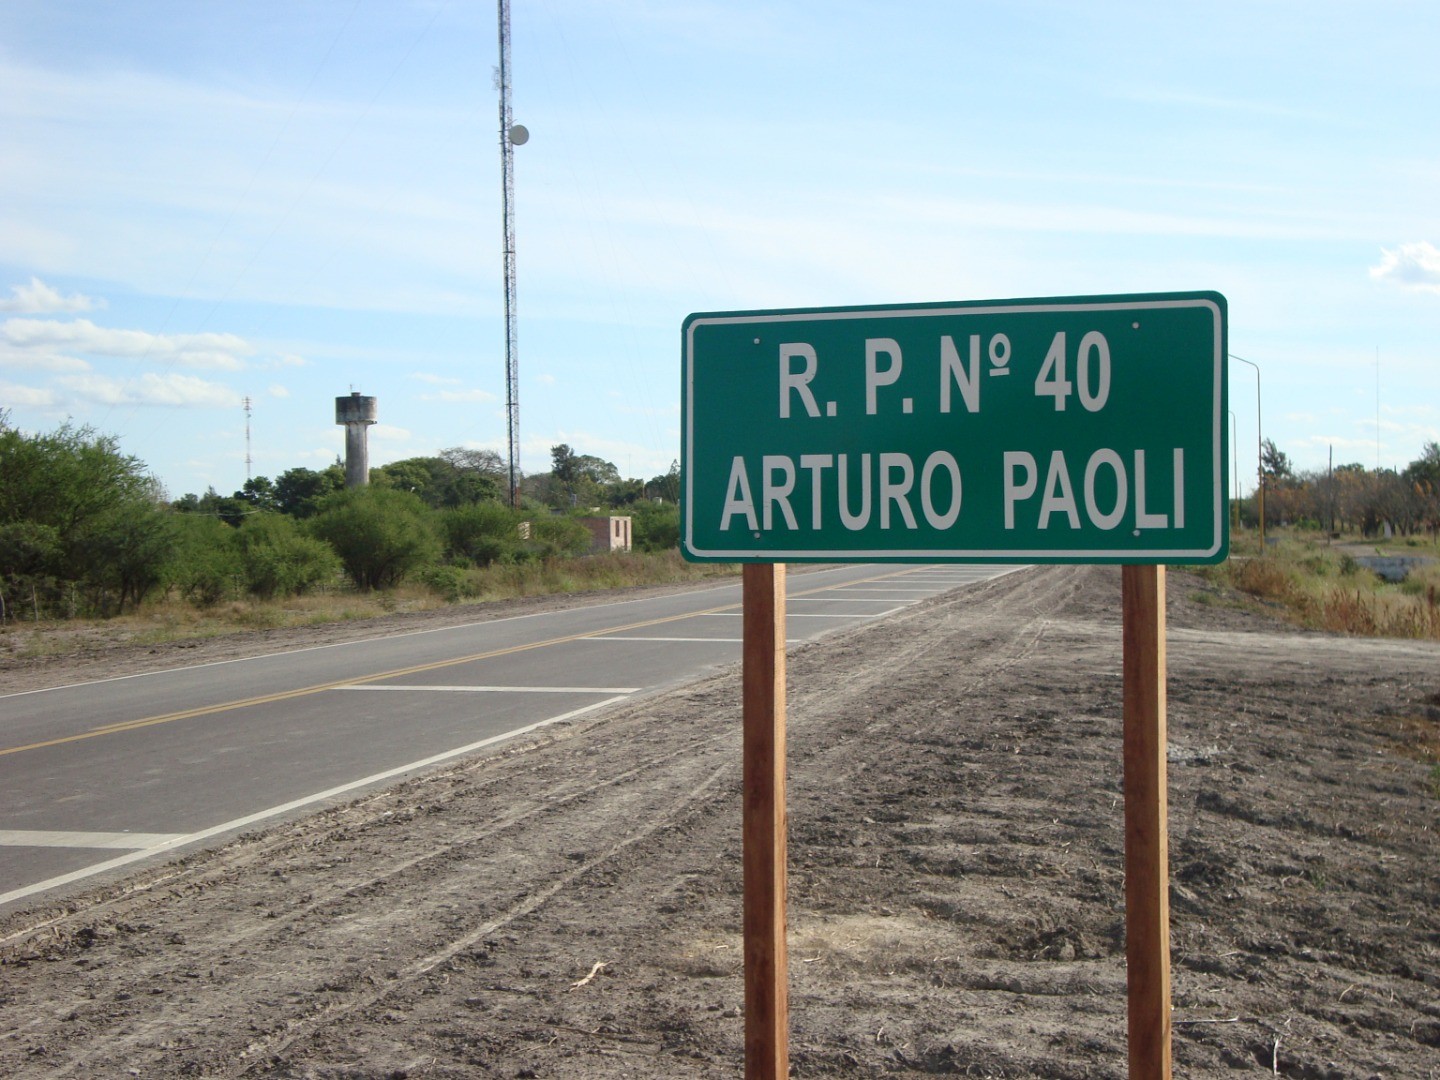 2006, Argentina, Stato di Santa Fé - Viene intitolata ad Arturo Paoli la strada che collega il capoluogo Reconquista a Fortin Olmos